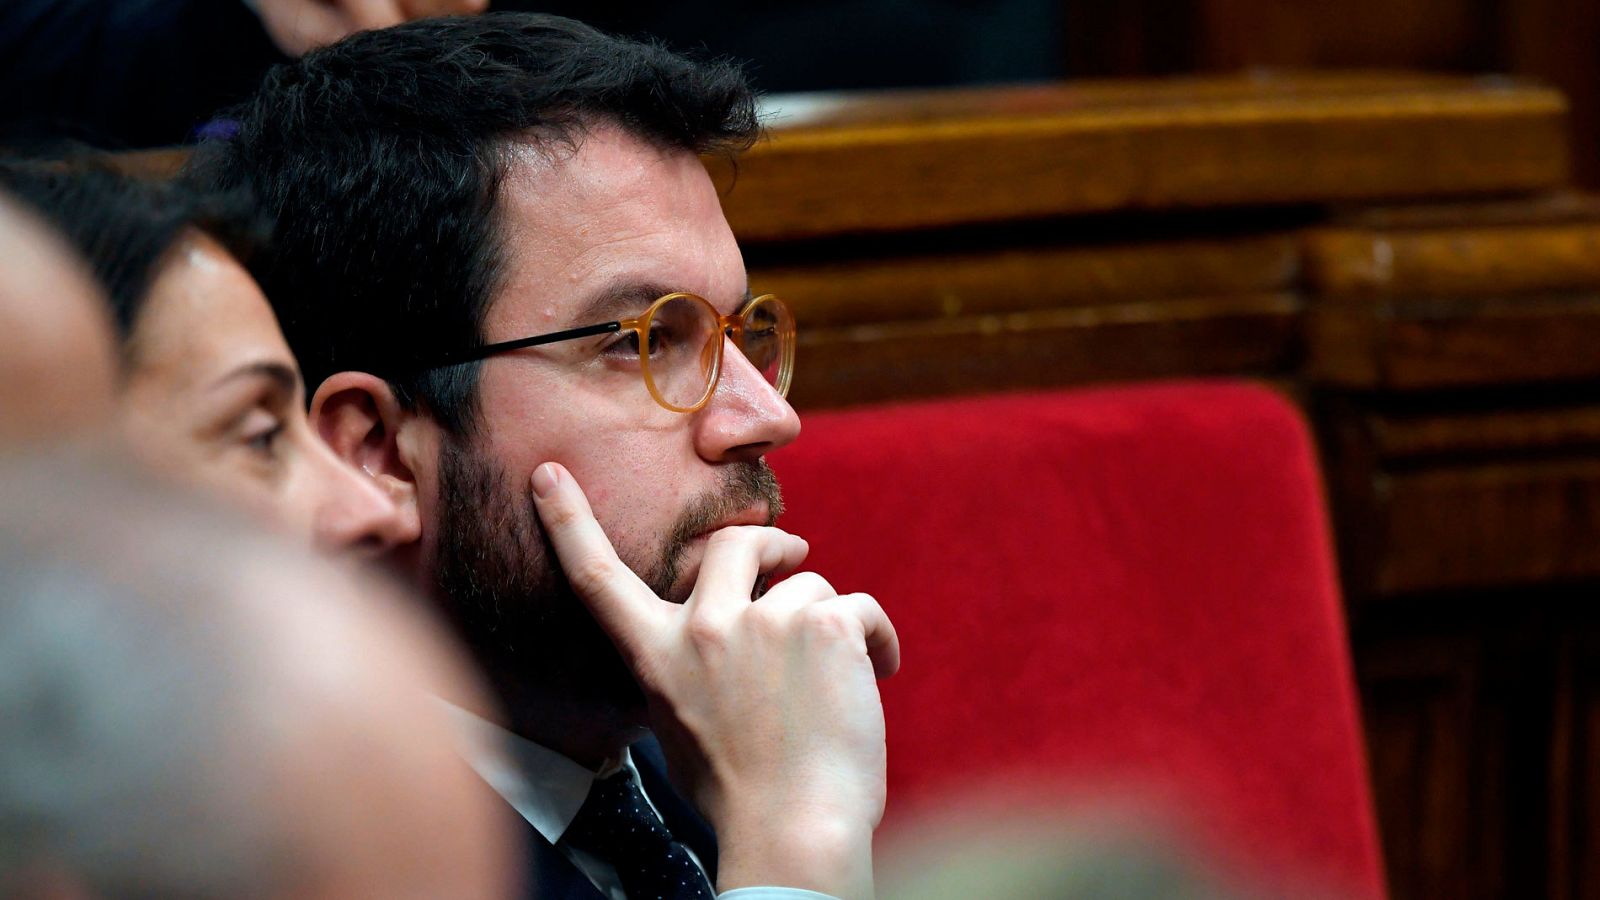 Pere Aragonès proposat formalment candidat a la investidura